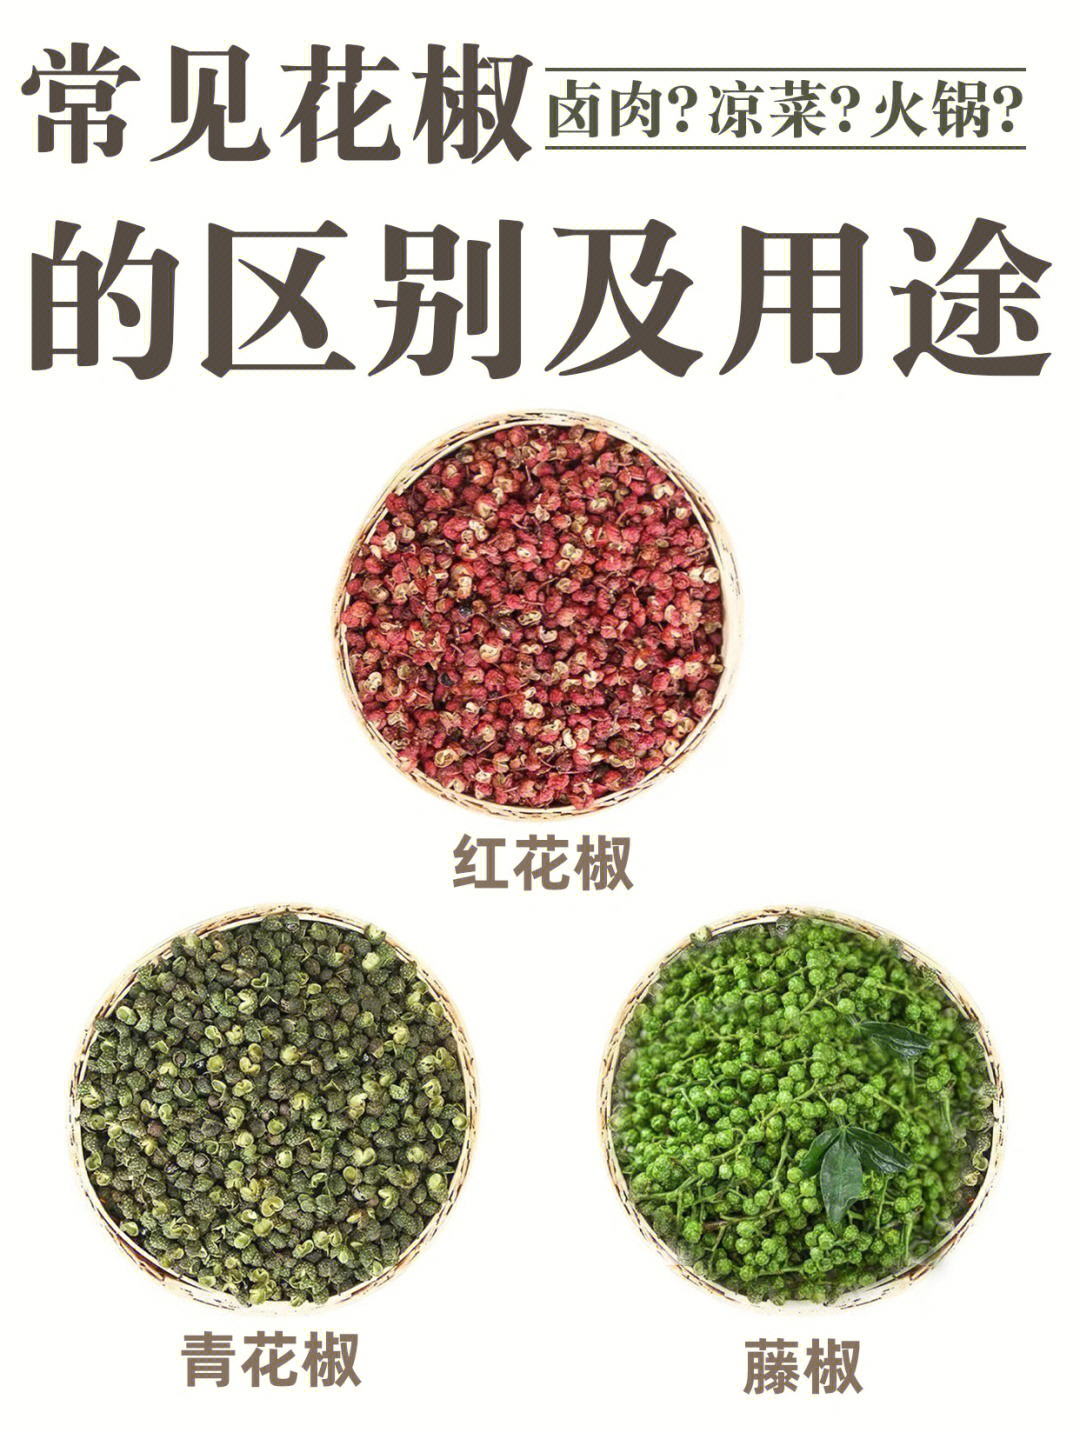 红花椒最有名的的品种当属大红袍,主要产地在四川,甘肃,陕西